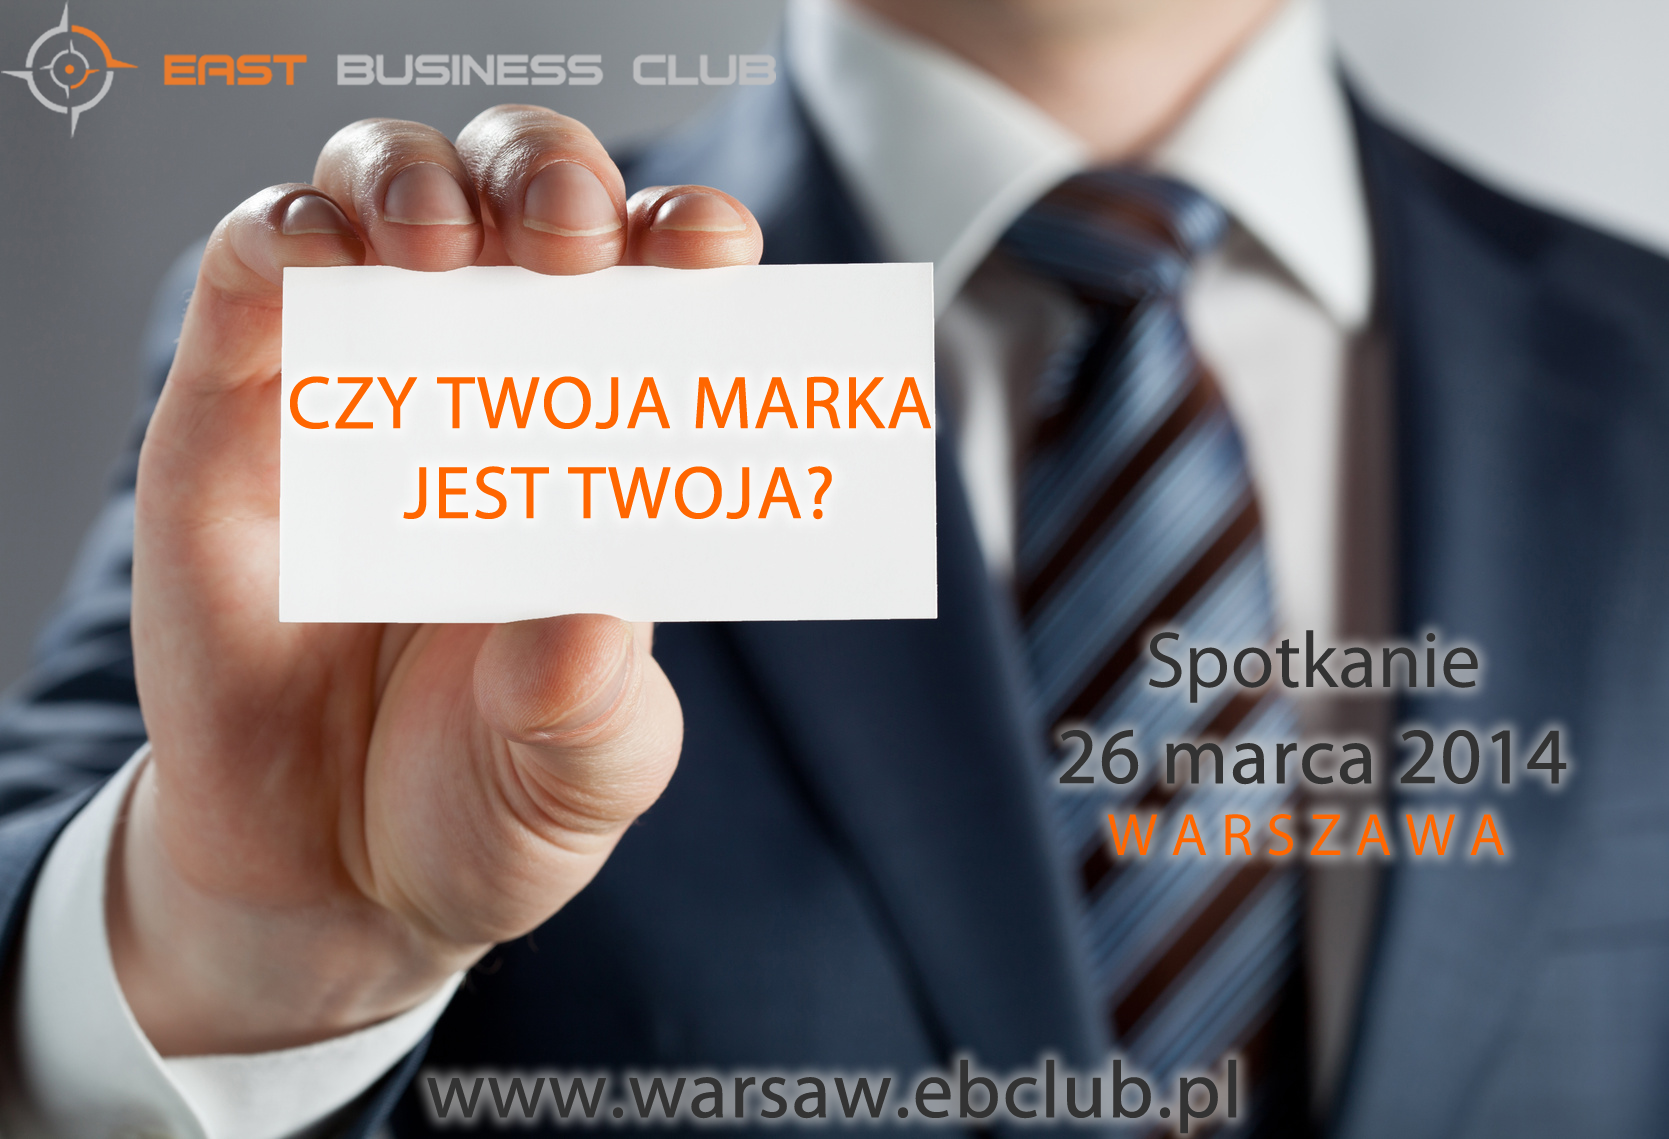 East Business Club Warsaw w samo południe!